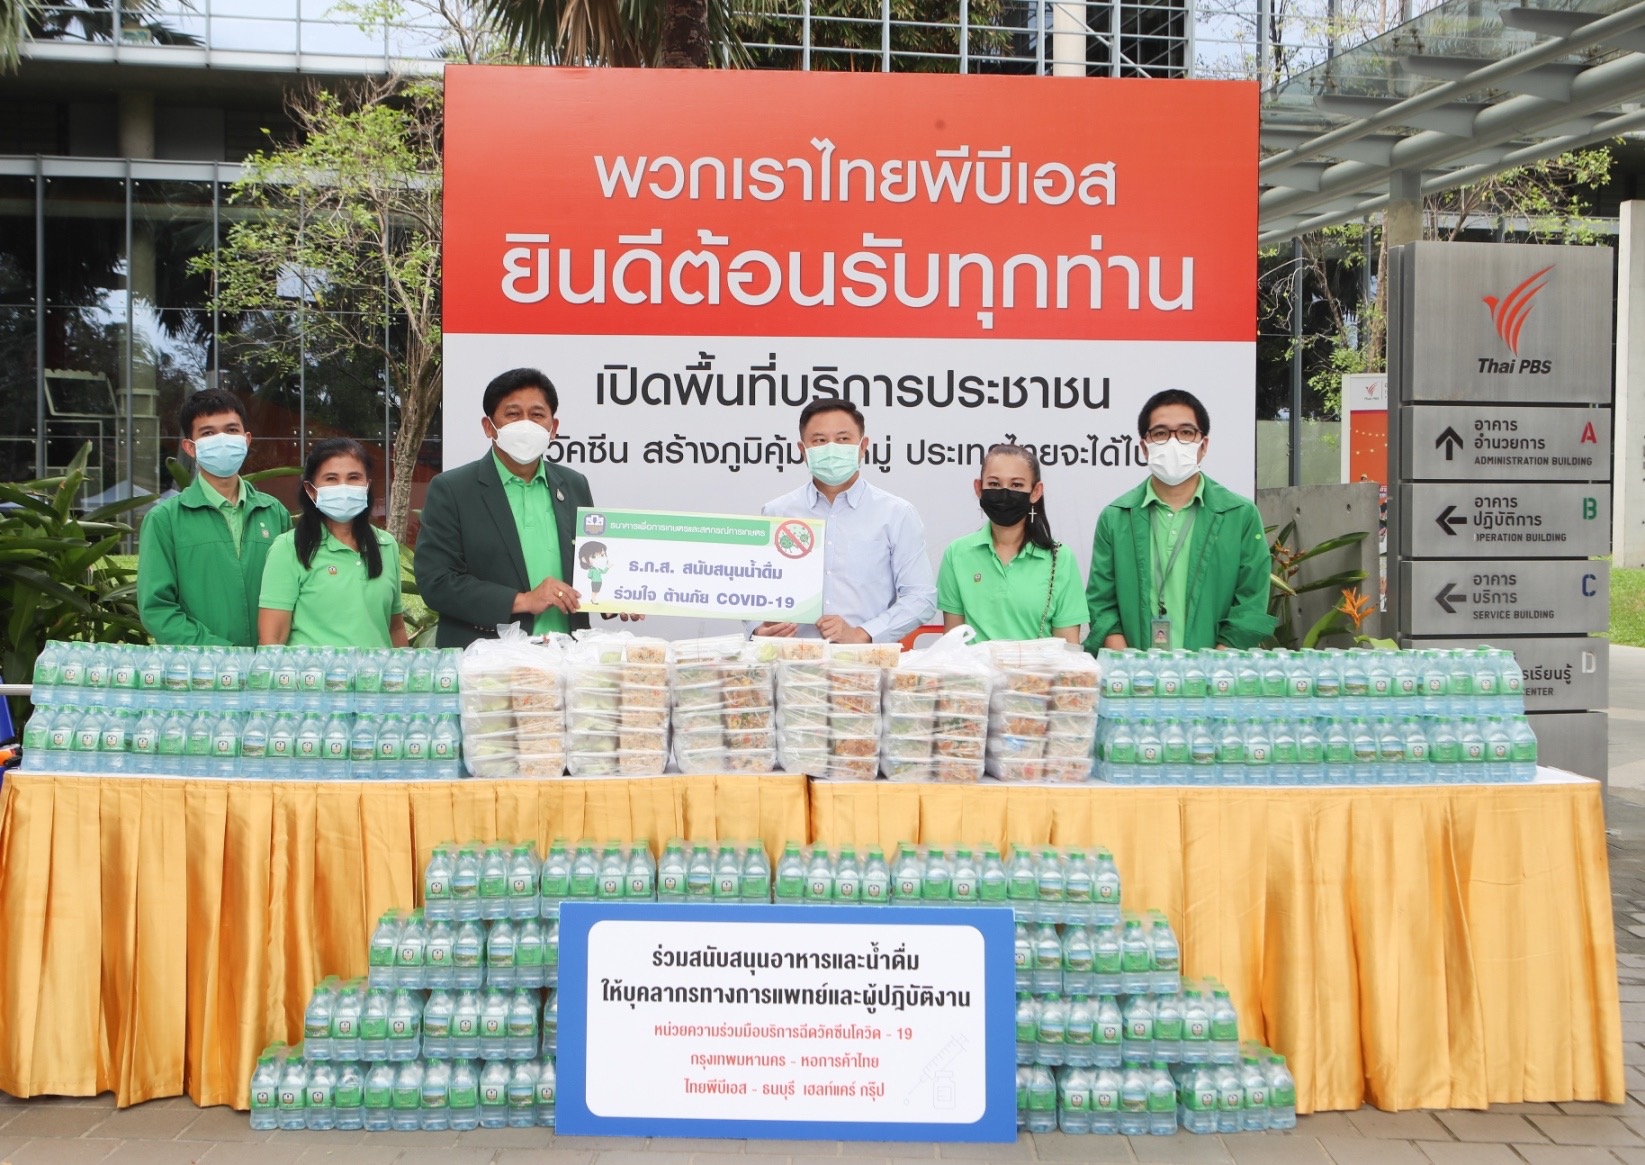 ธ.ก.ส. ร่วมมอบน้ำดื่มและอาหารกล่องให้กับหน่วยฉีดวัคซีนป้องกัน COVID-19สถานีโทรทัศน์ไทยพีบีเอส